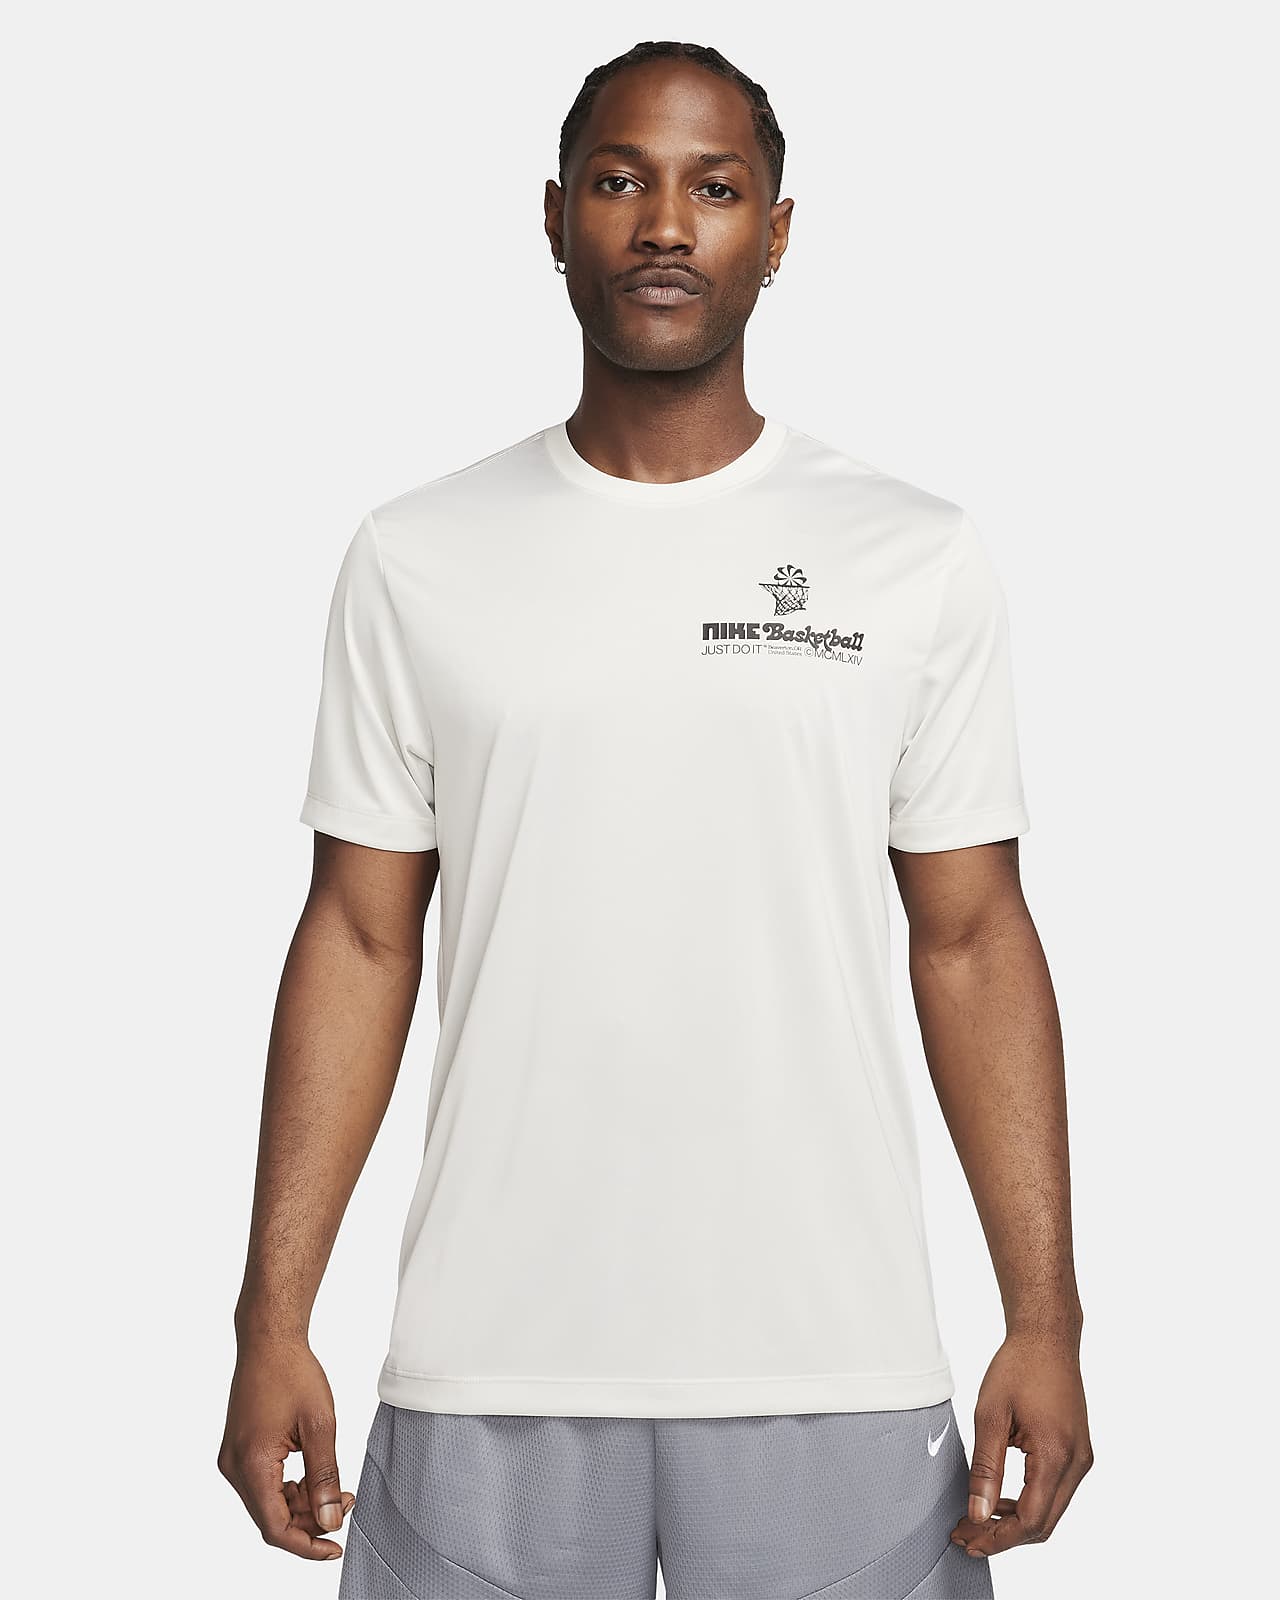 Nike Dri-FIT férfi kosárlabdás póló